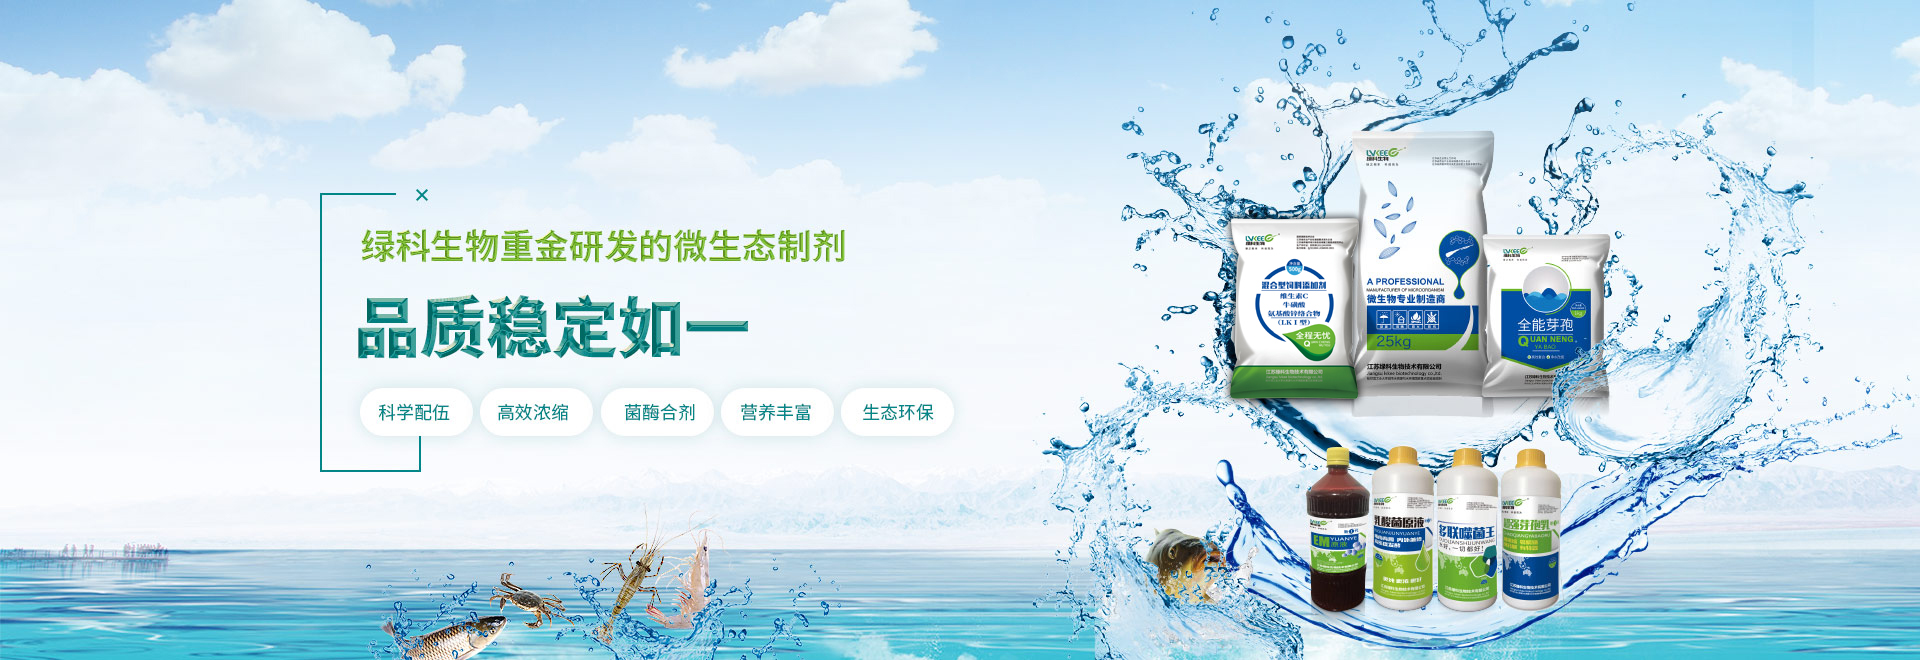 綠科生物致力于成為中國微生物發酵產品贏領品牌